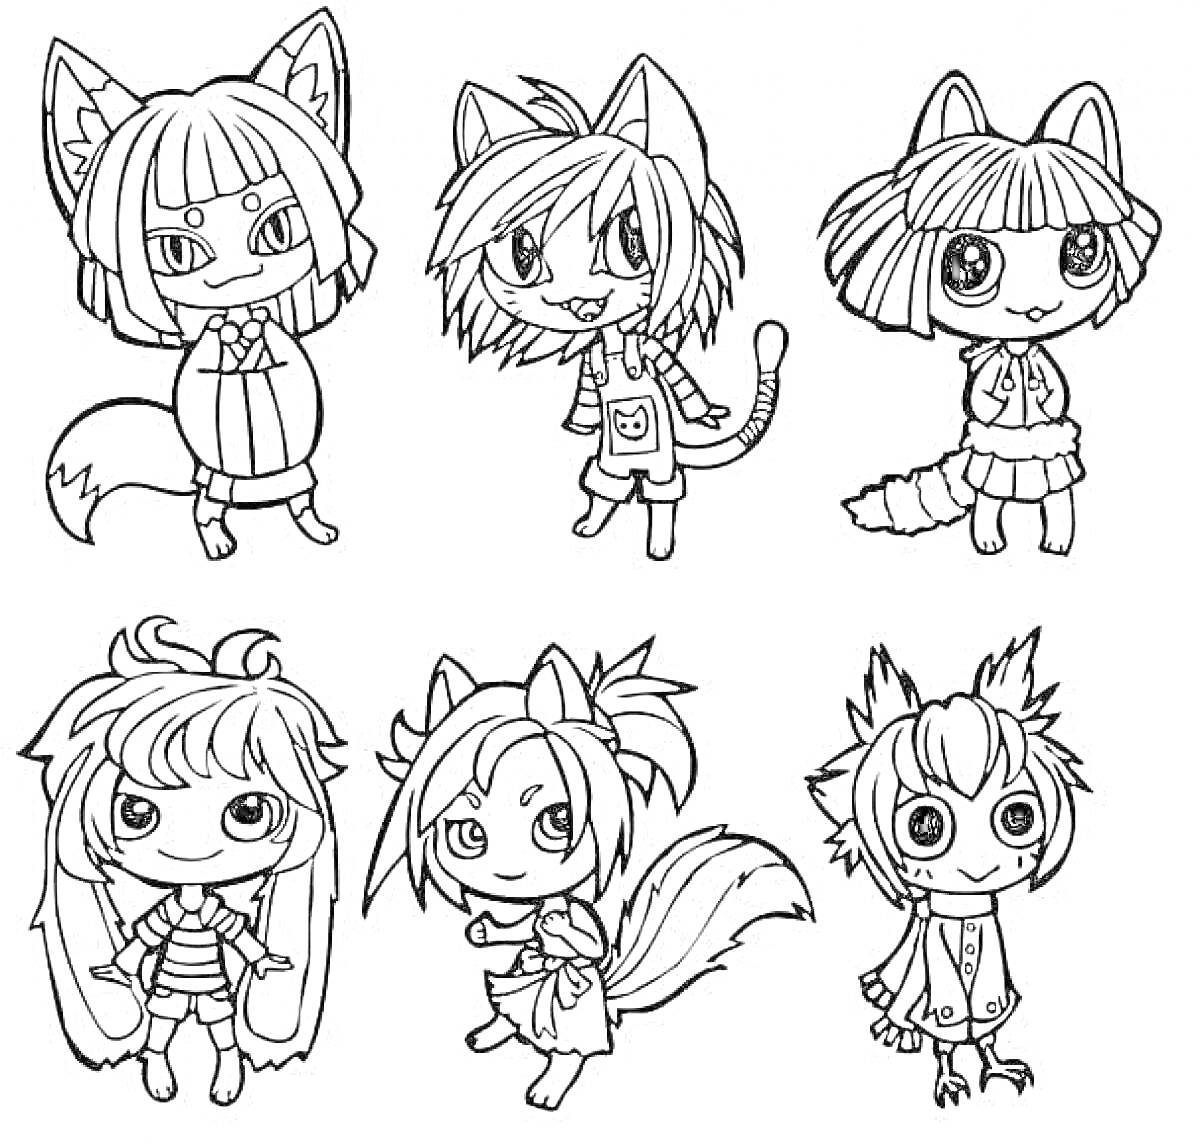 Раскраска Маленькие аниме персонажи с ушами и хвостами в разных нарядах